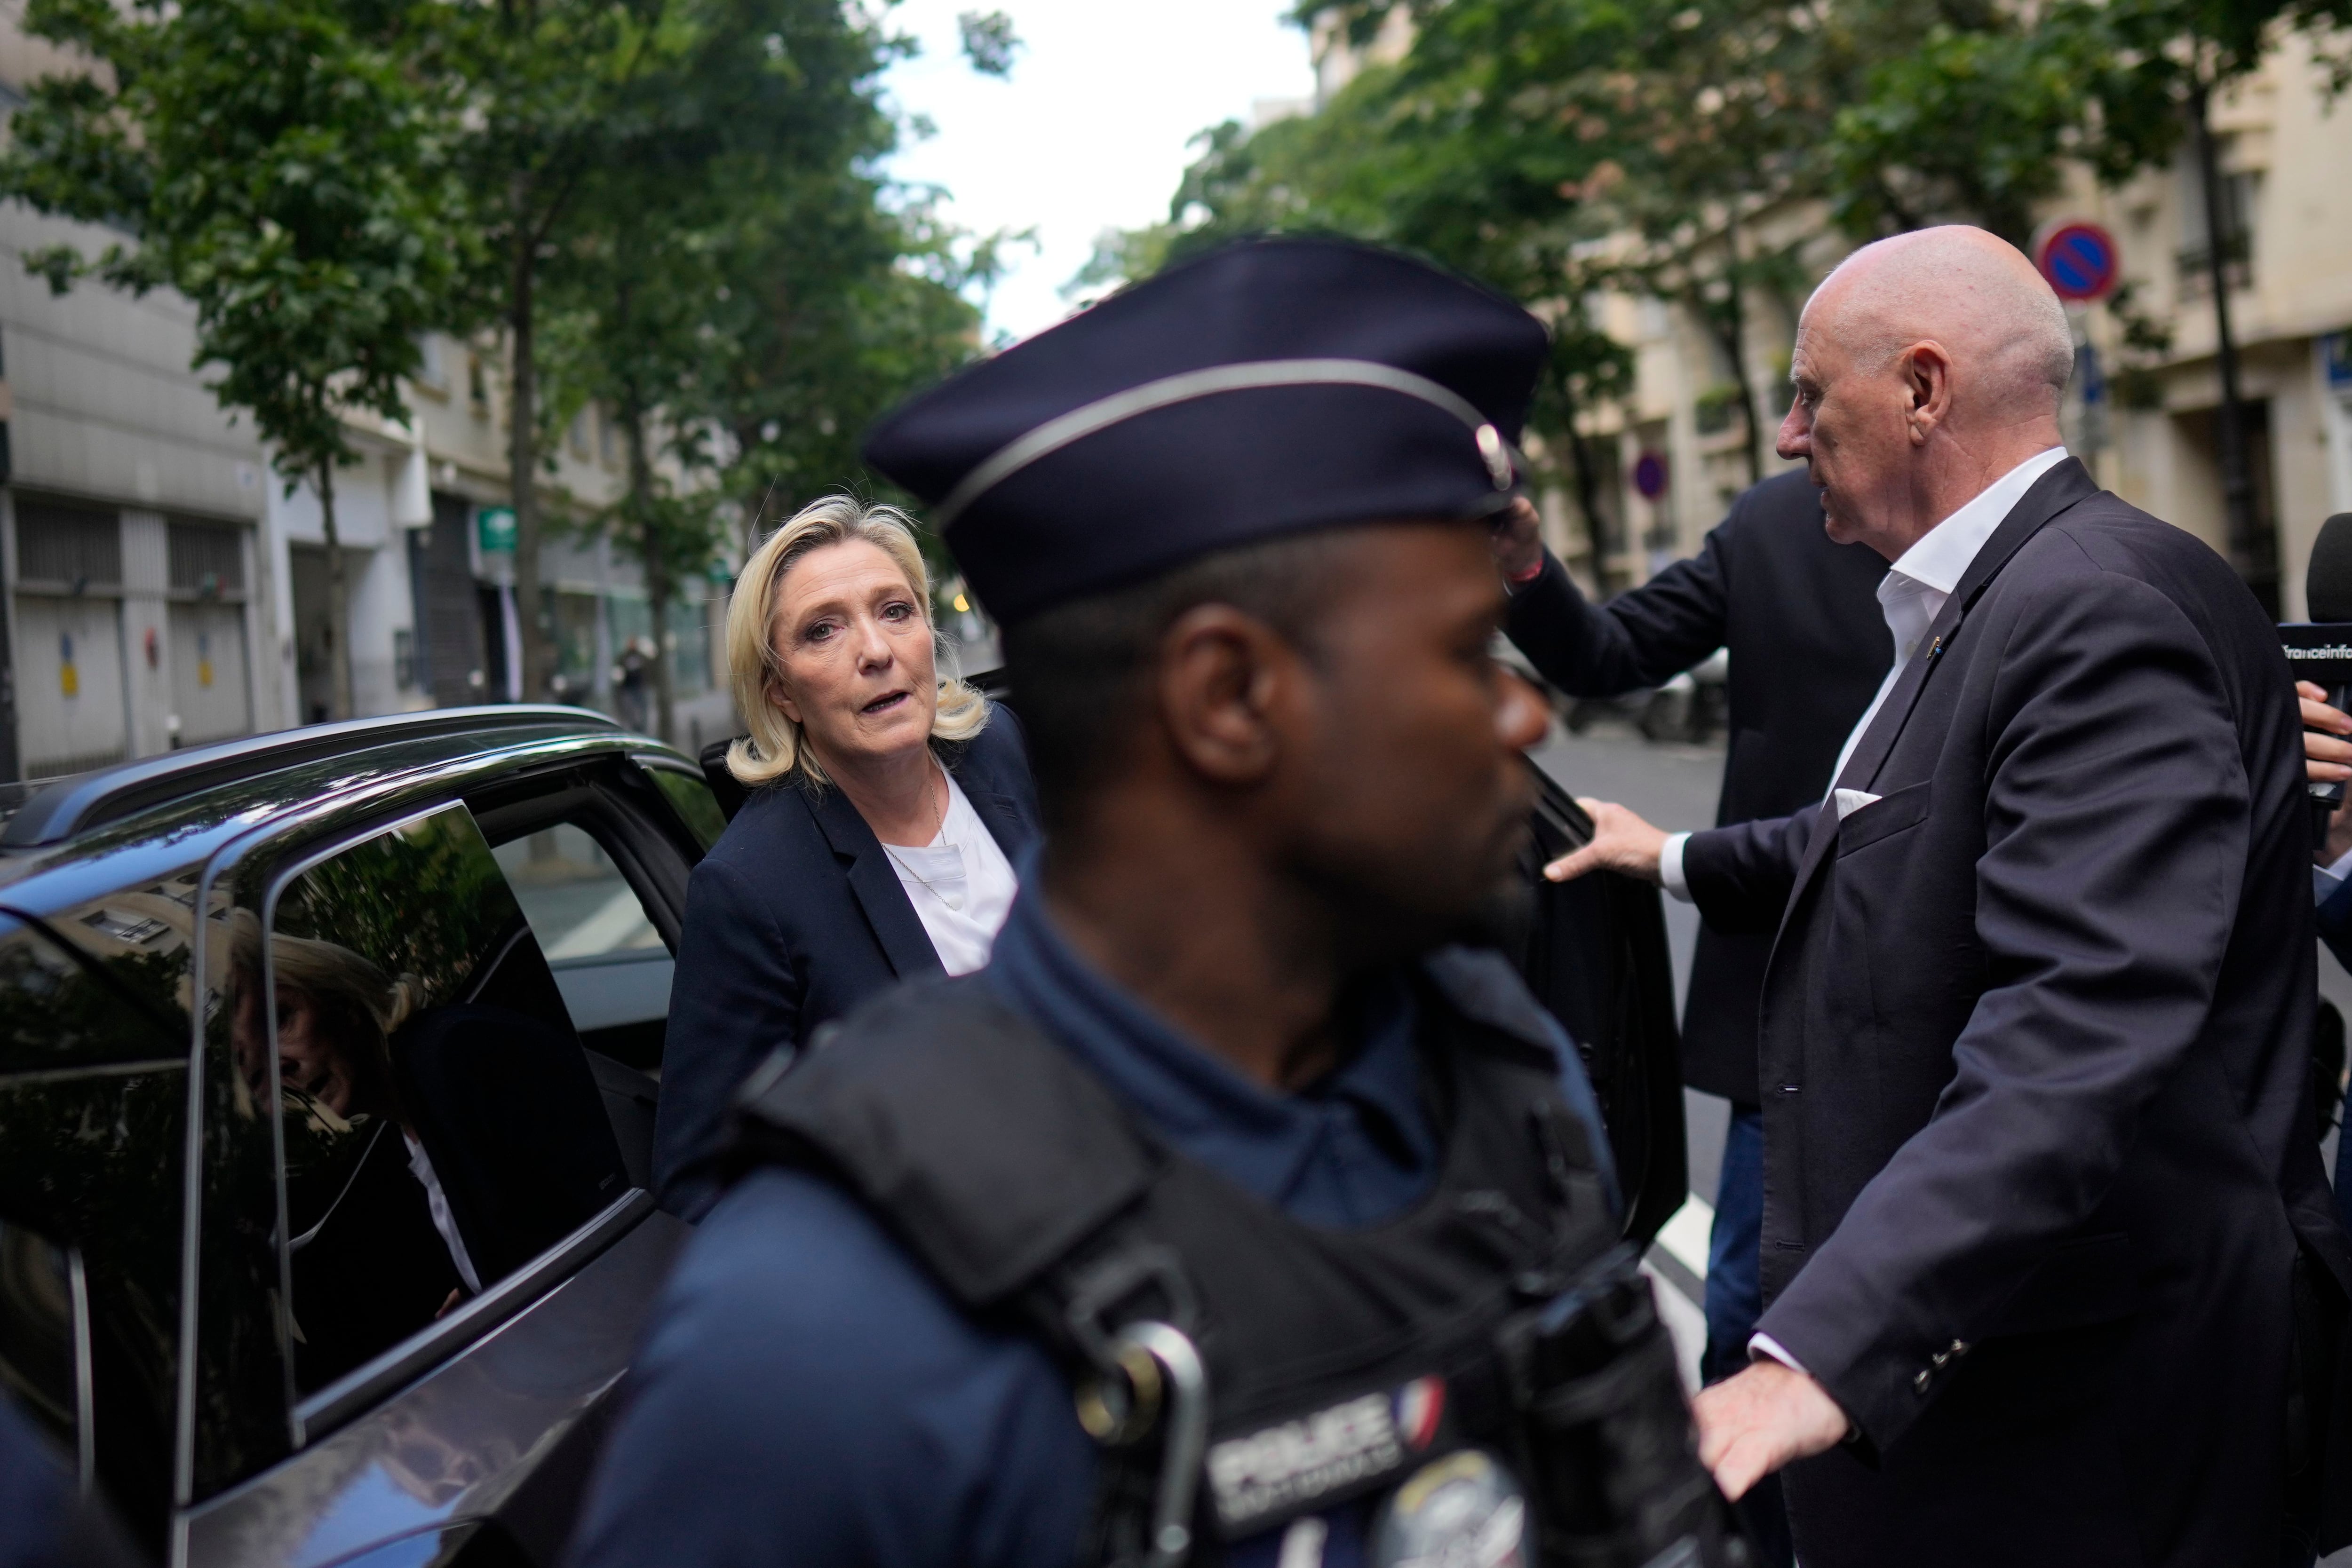 La Rusia de Putin apoya a Marine Le Pen en vísperas de las elecciones legislativas en Francia